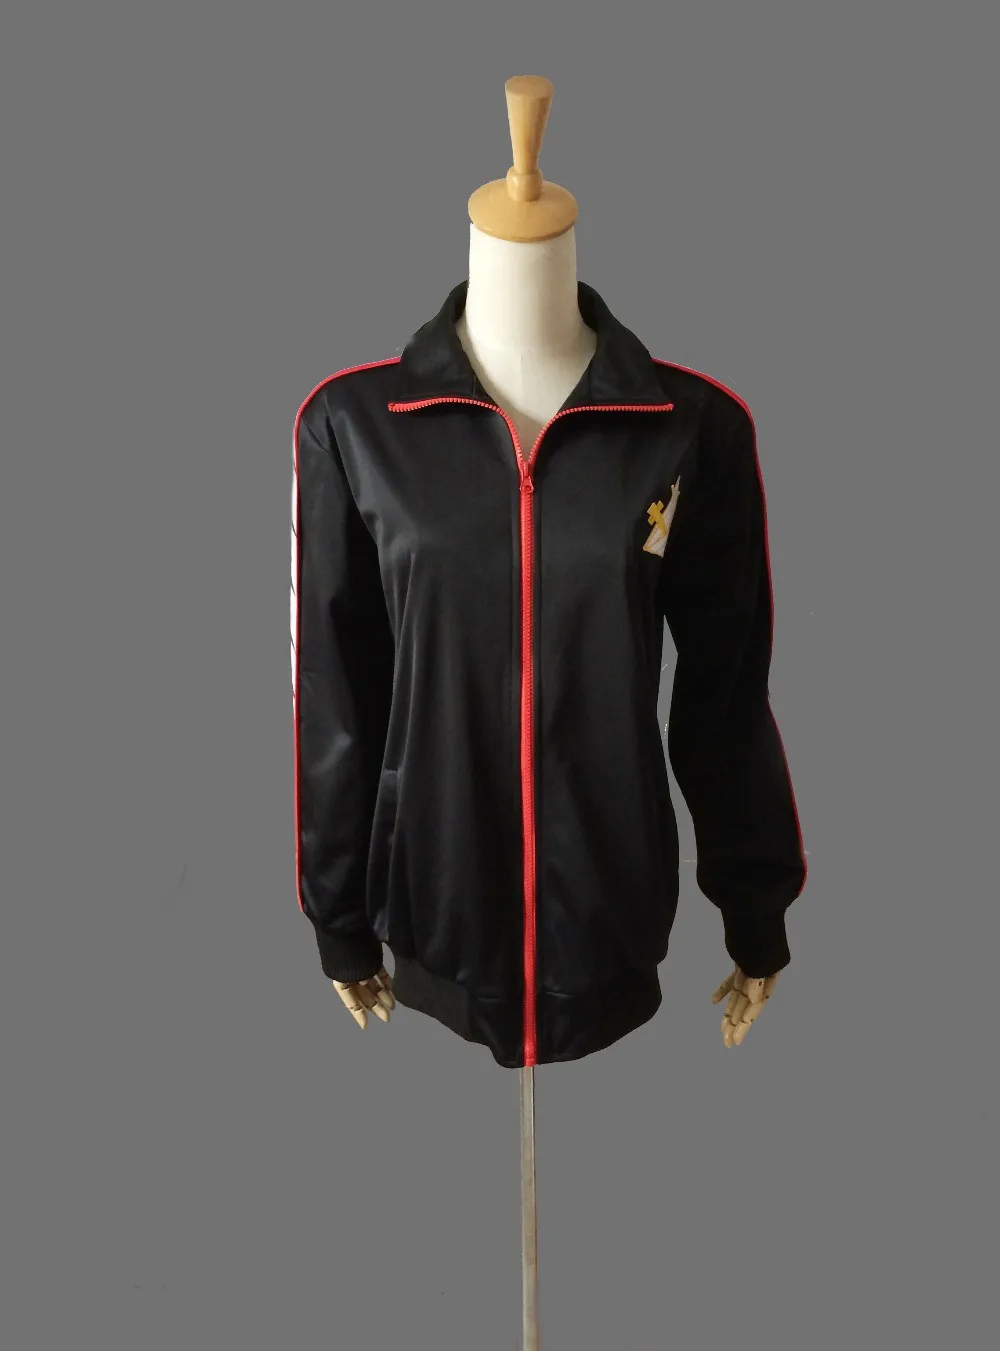 Бесплатно Плавание Club куртка Рин Мацуока Deluxe Edition форменная куртка пальто костюм Косплэй костюм Школьная спортивная одежда